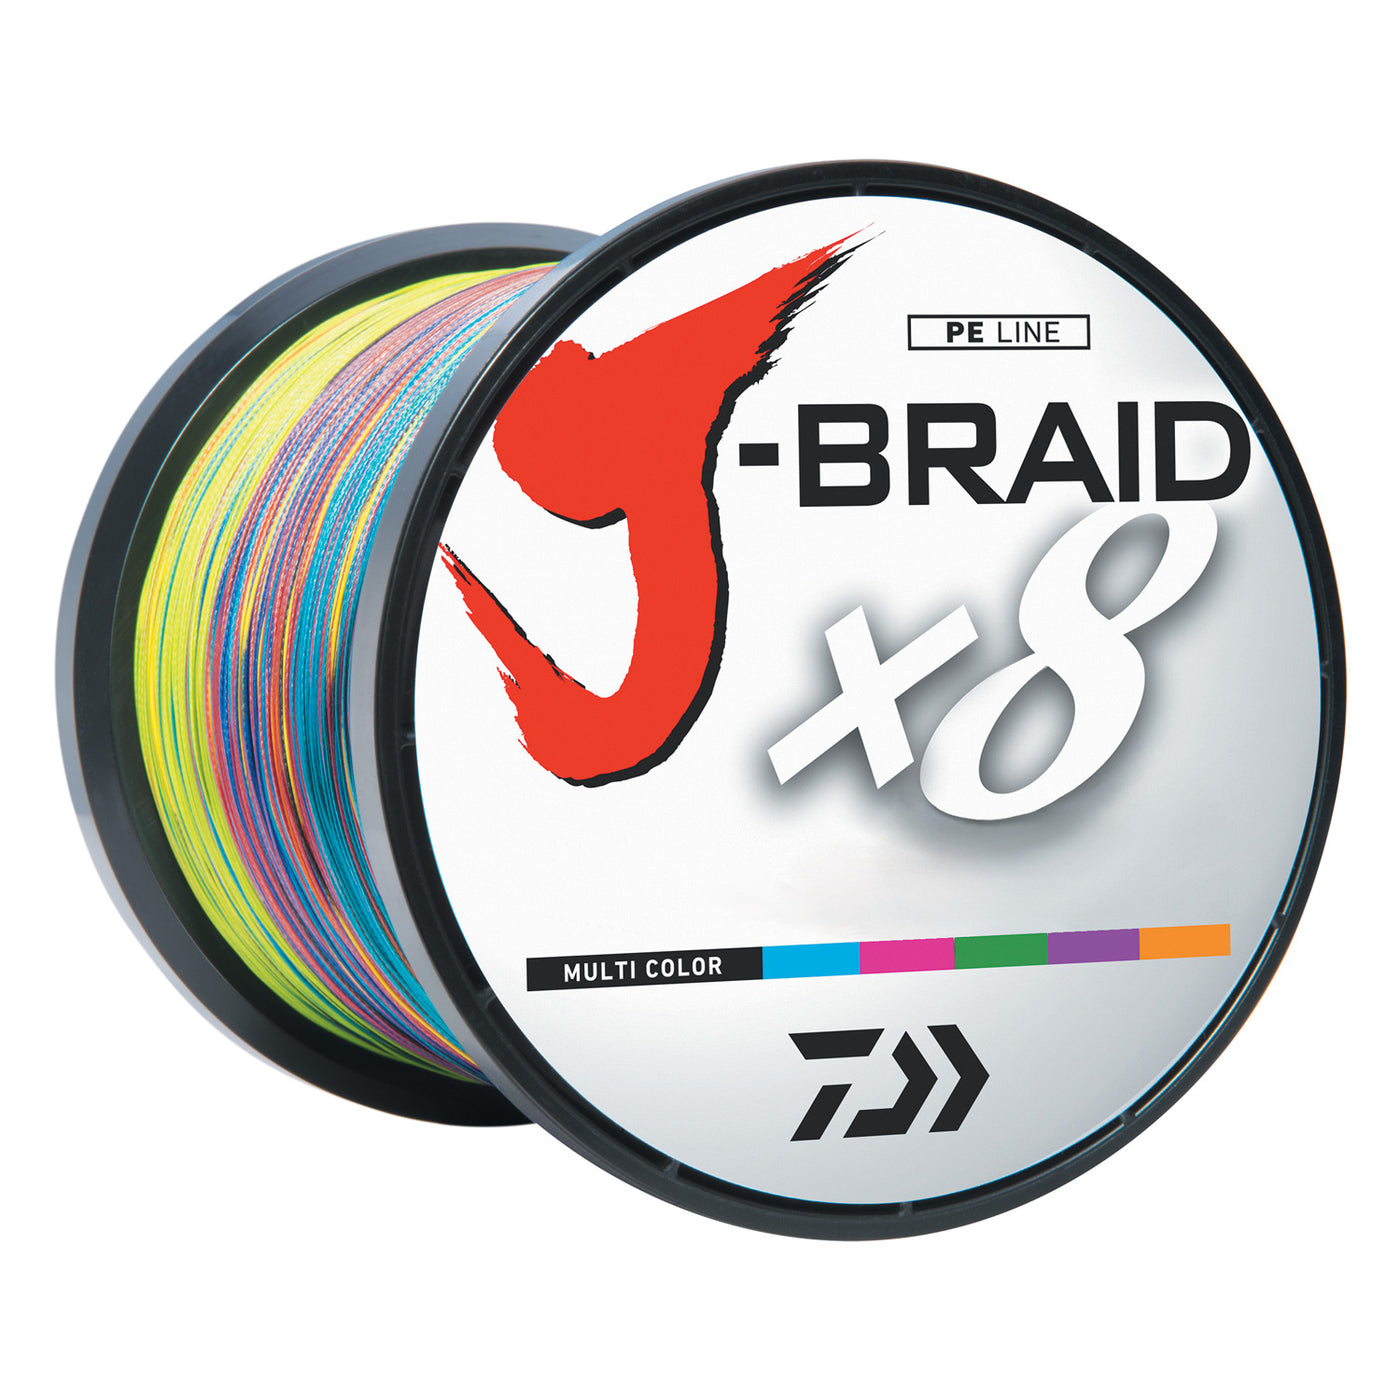 Daiwa J-Braid Grand X8 (1500m) - Line, Leaders & Braids